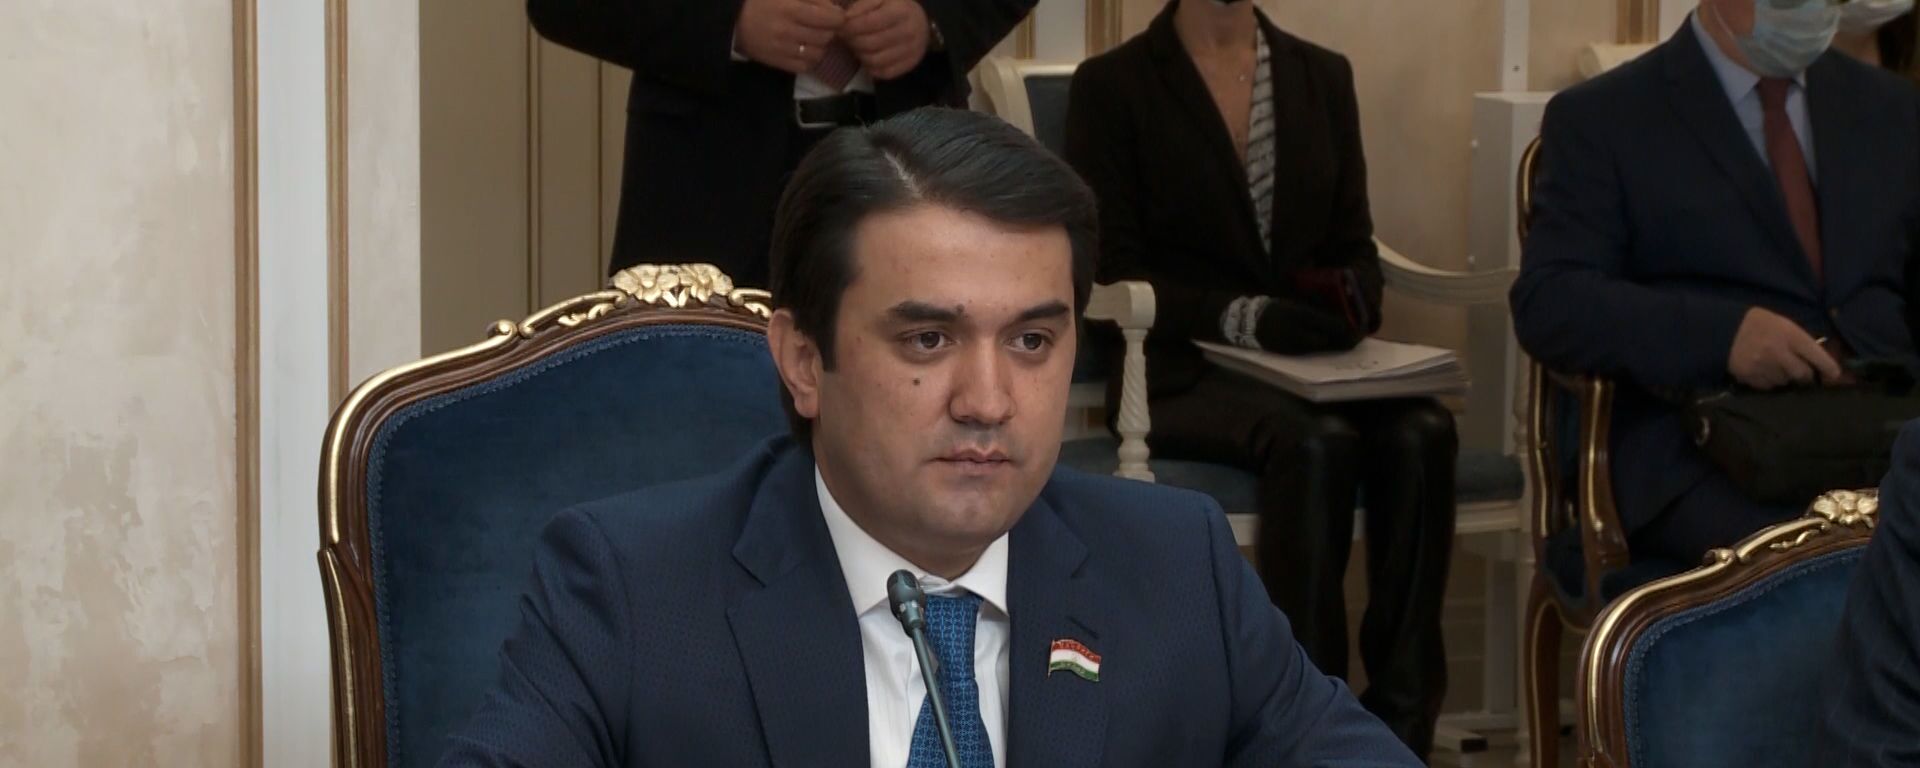 Глава парламента Таджикистана Рустам Эмомали - Sputnik Таджикистан, 1920, 25.12.2020